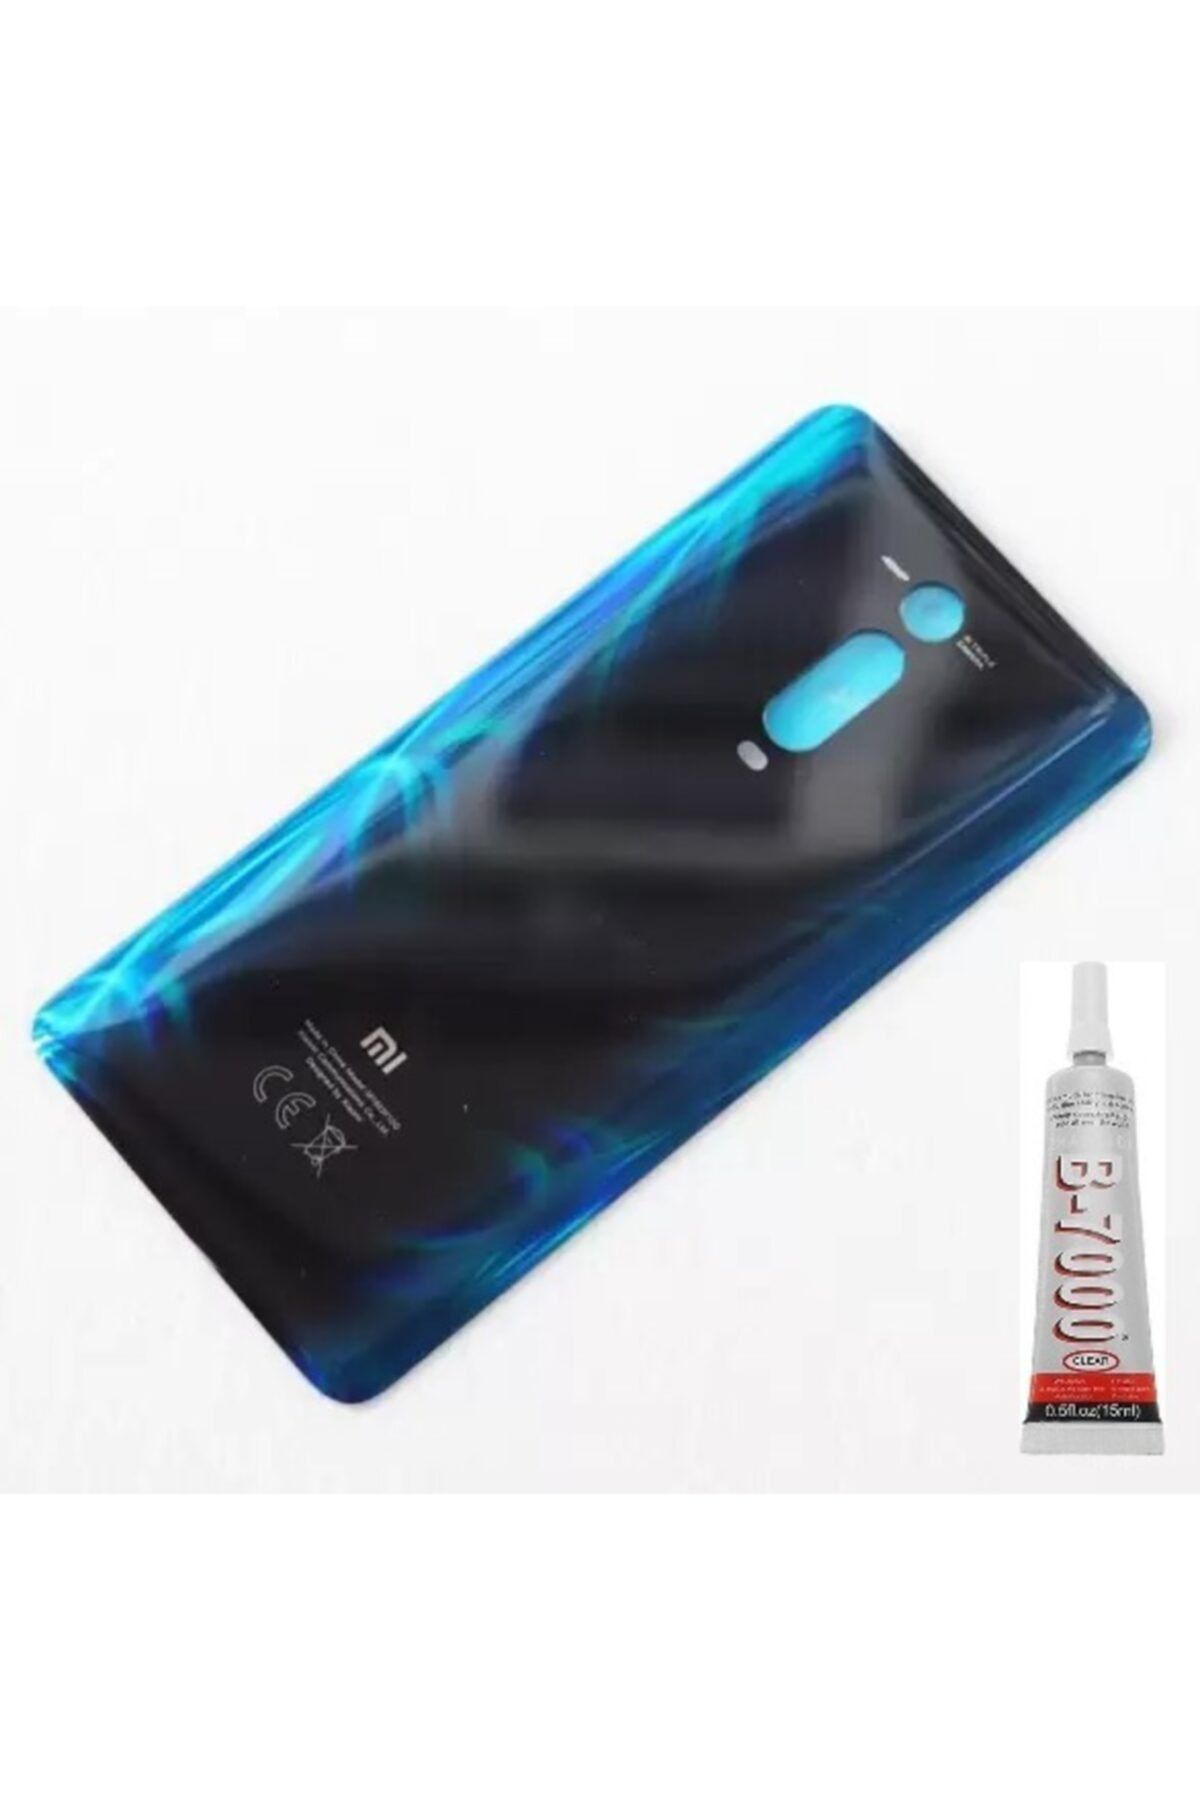 EDA TEKNİK Xiaomi Mi 9t Uyumlu Arka Pil Kapağı Mavi b7000 15ml